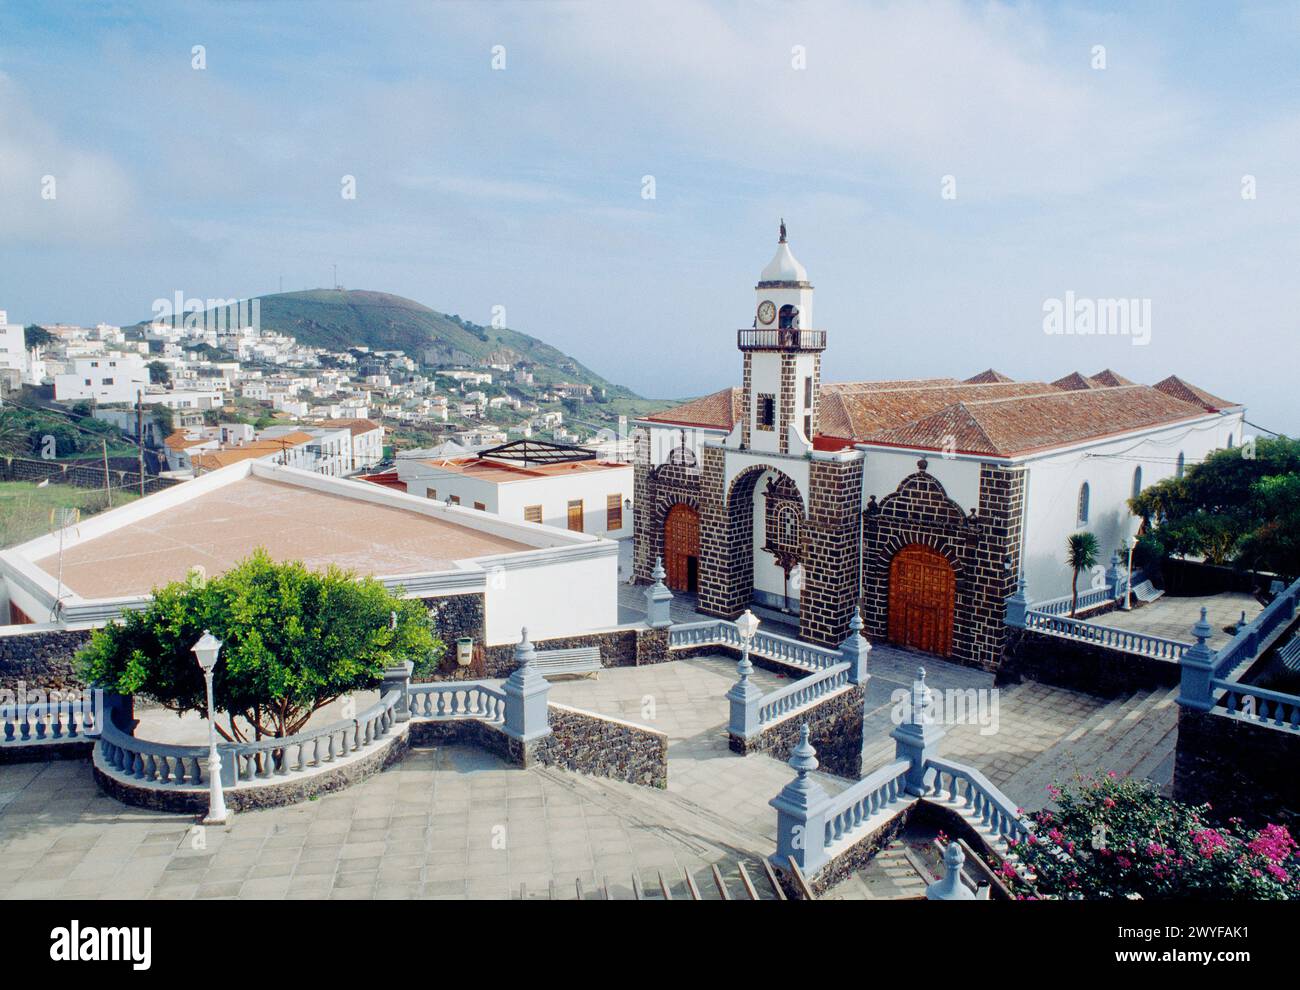 Nuestra Señora de la Concepcion church and overview. Valverde, El Hierro island, Canary Islands, Spain. Stock Photo